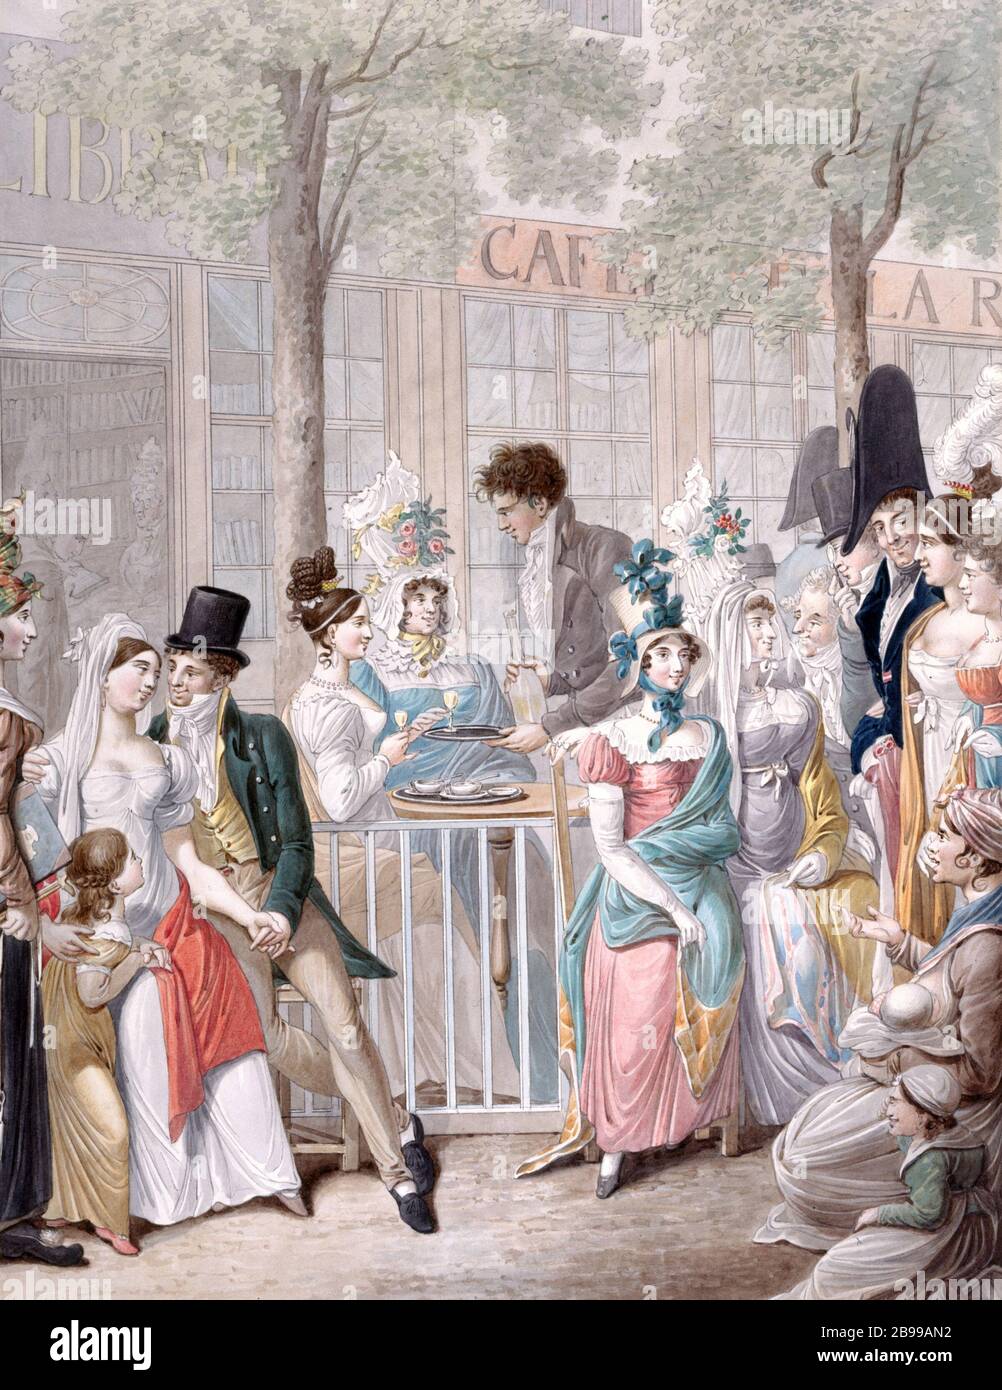 CAFÉ AU PALAIS DU ROYAL ROTONDE Georg Emmanuel Opitz (ou Opiz, 1775-1841). 'Le café de la Rotonde au Palais-Royal'. Paris, musée Carnavalet. Banque D'Images